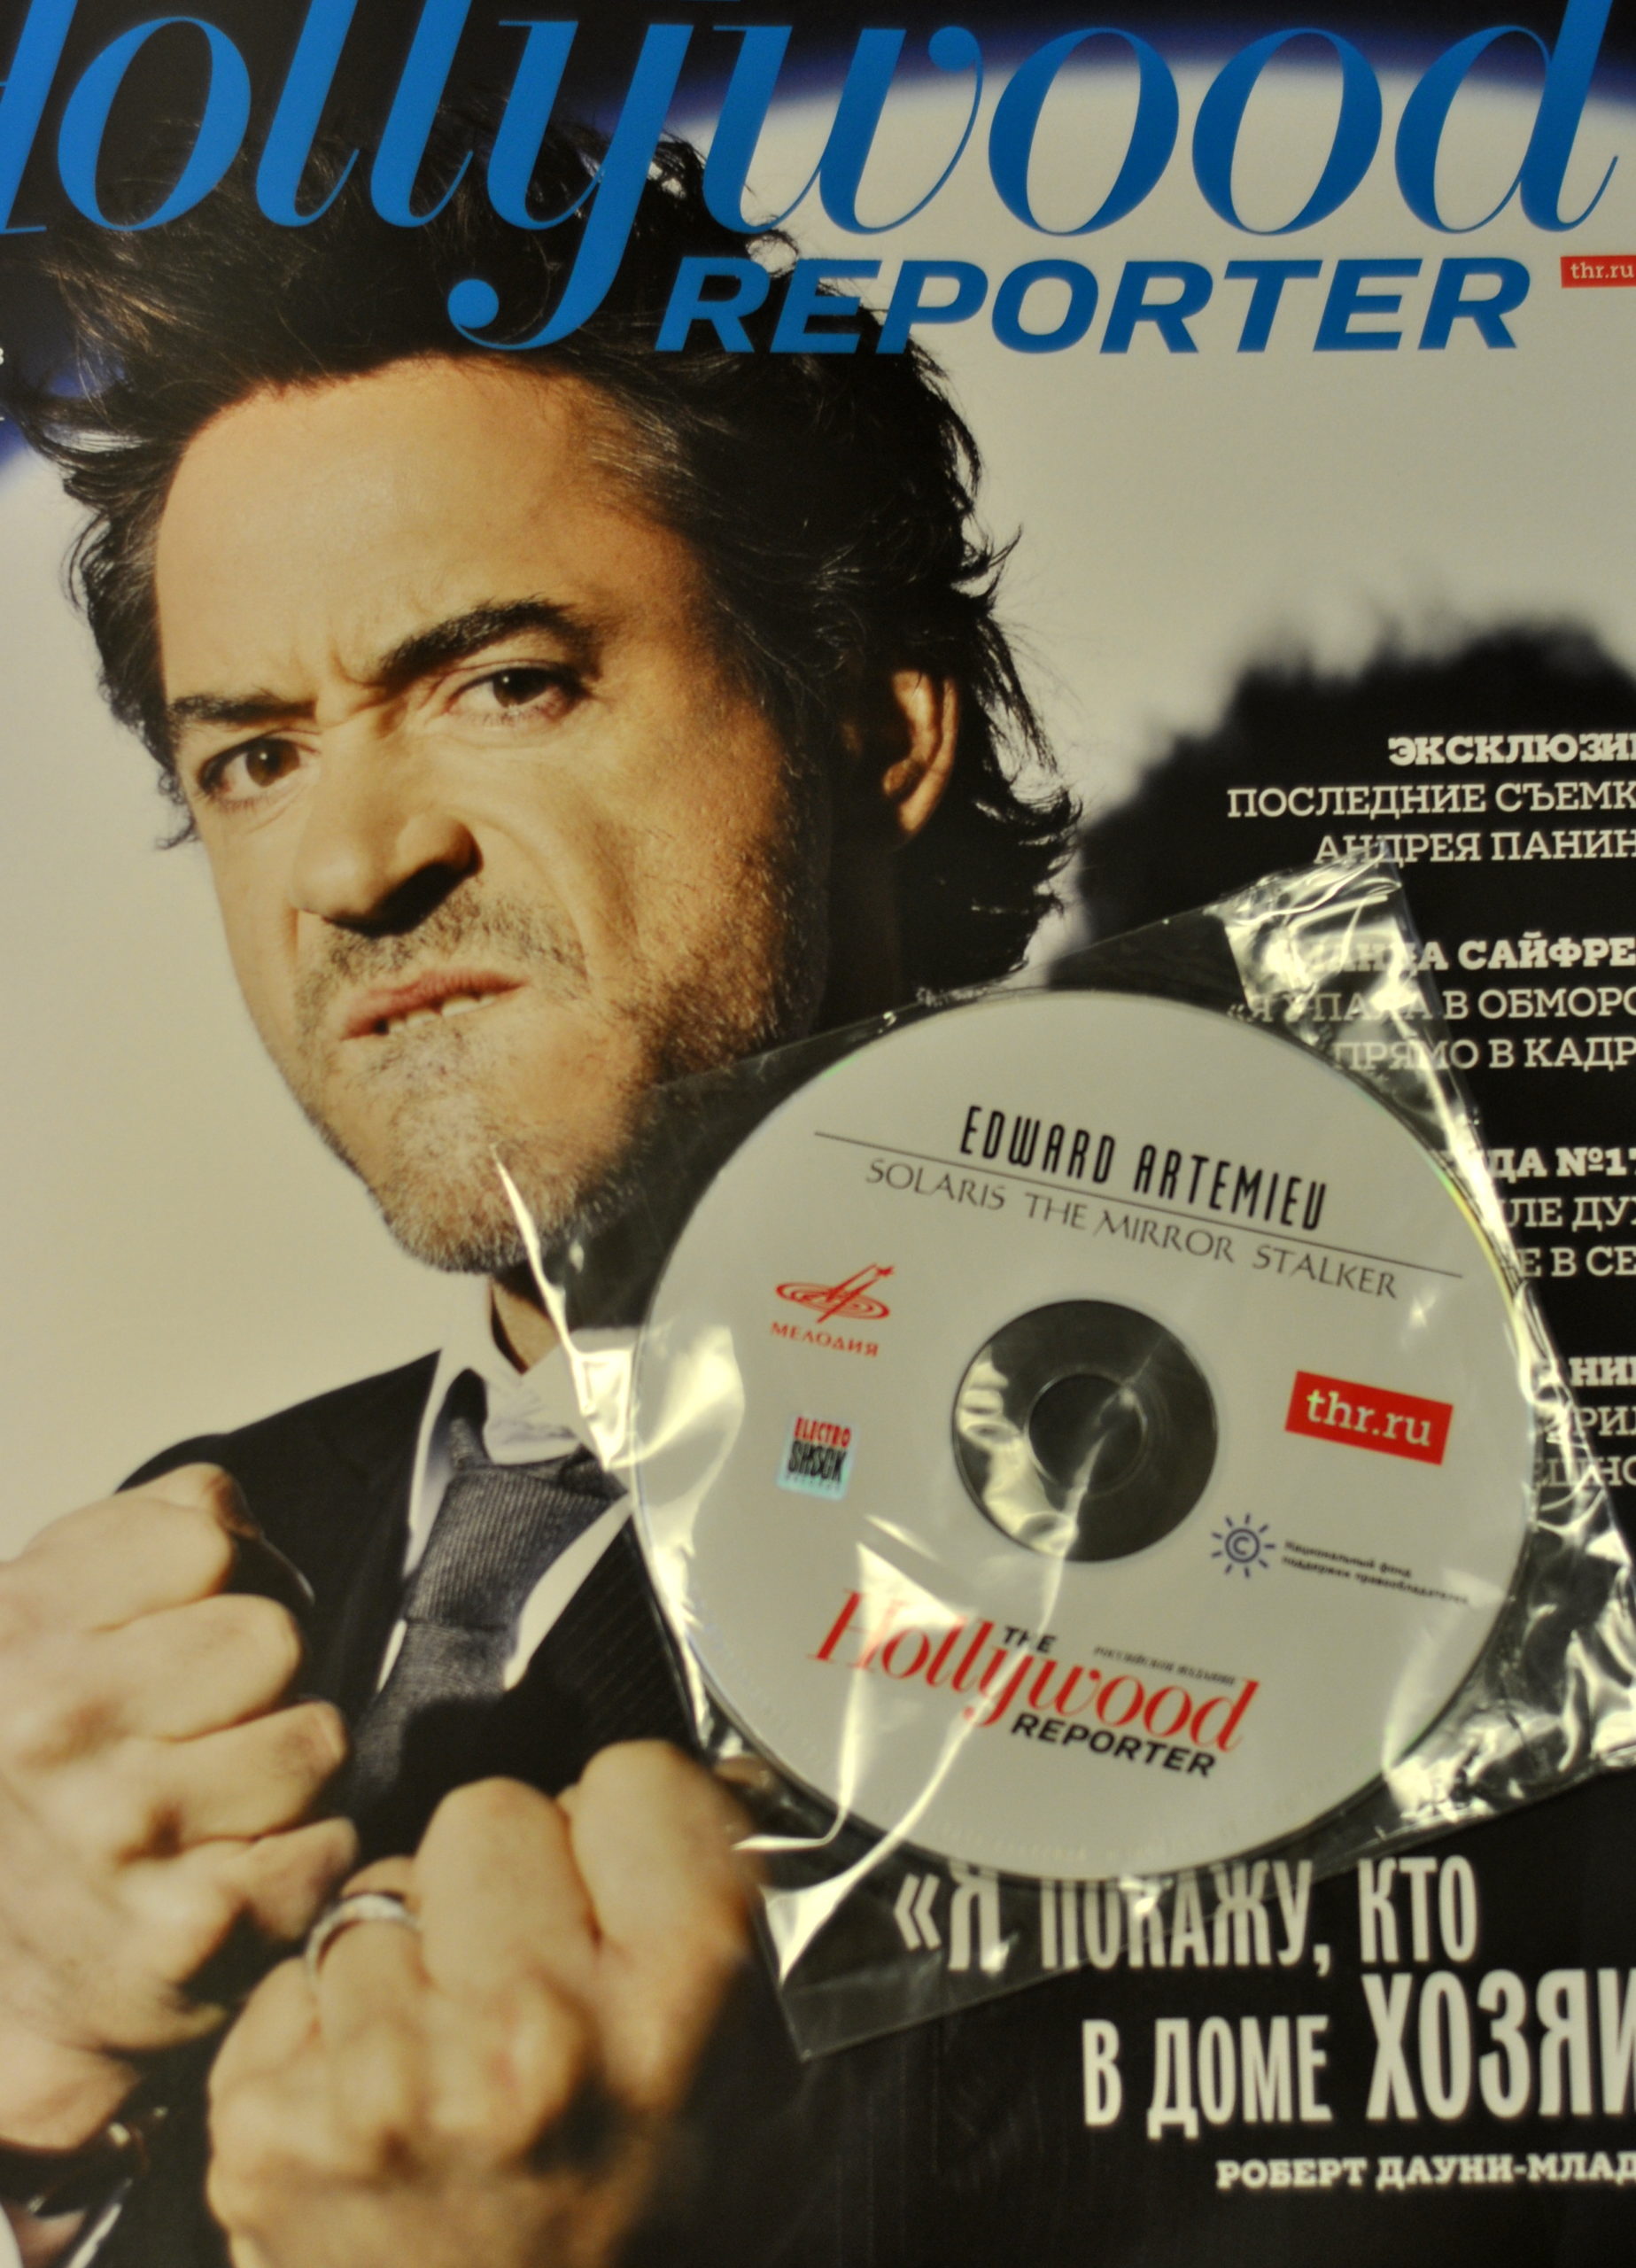 Российское издание The Hollywood Reporter совместно с НФПП выпустили диск